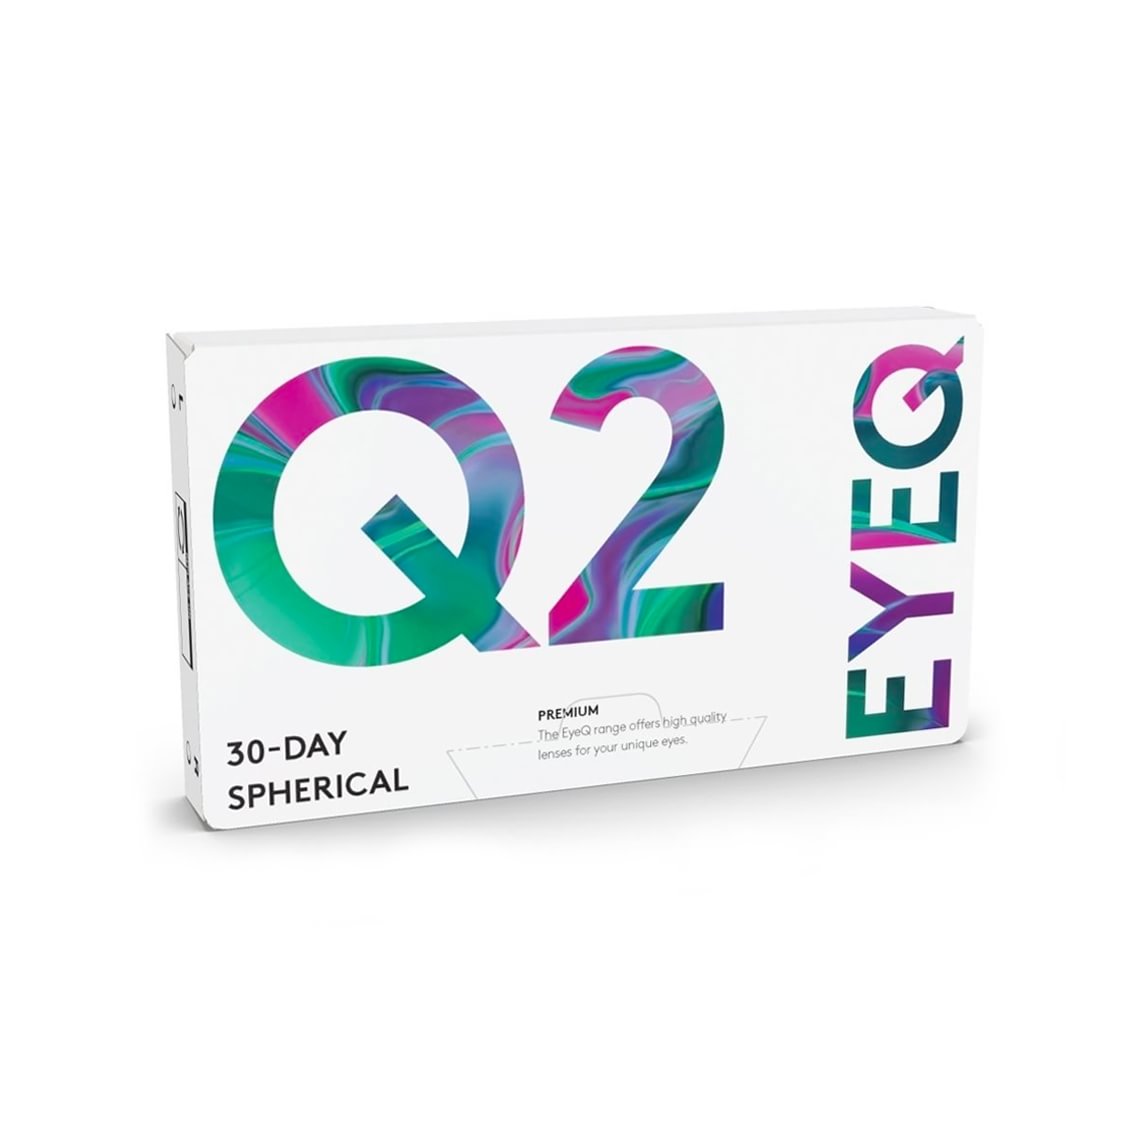 EyeQ Premium Q2 6 stk/pk